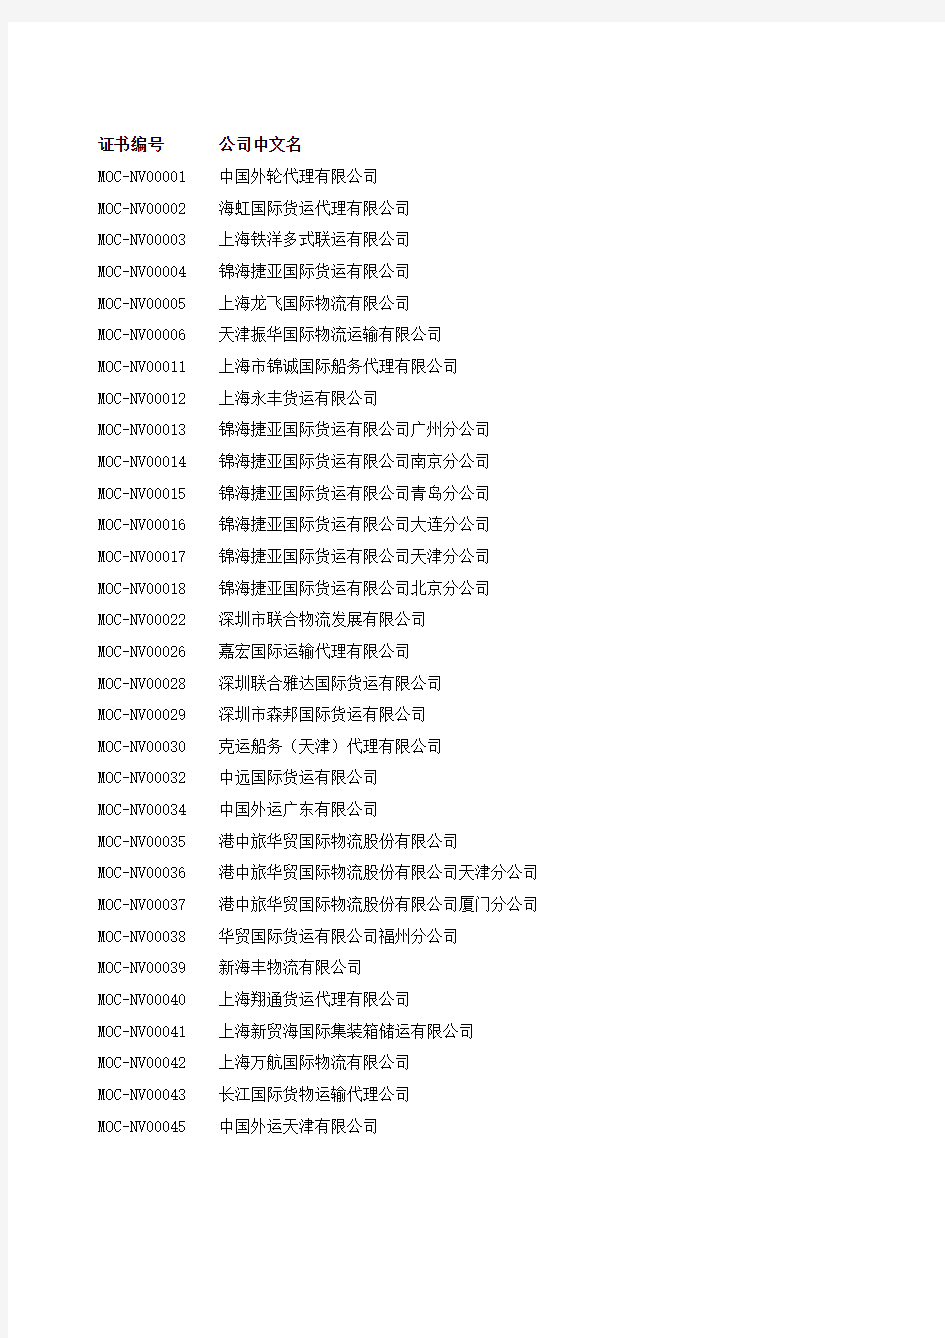 无船承运业务经营者名单(截止到2014年2月28日)